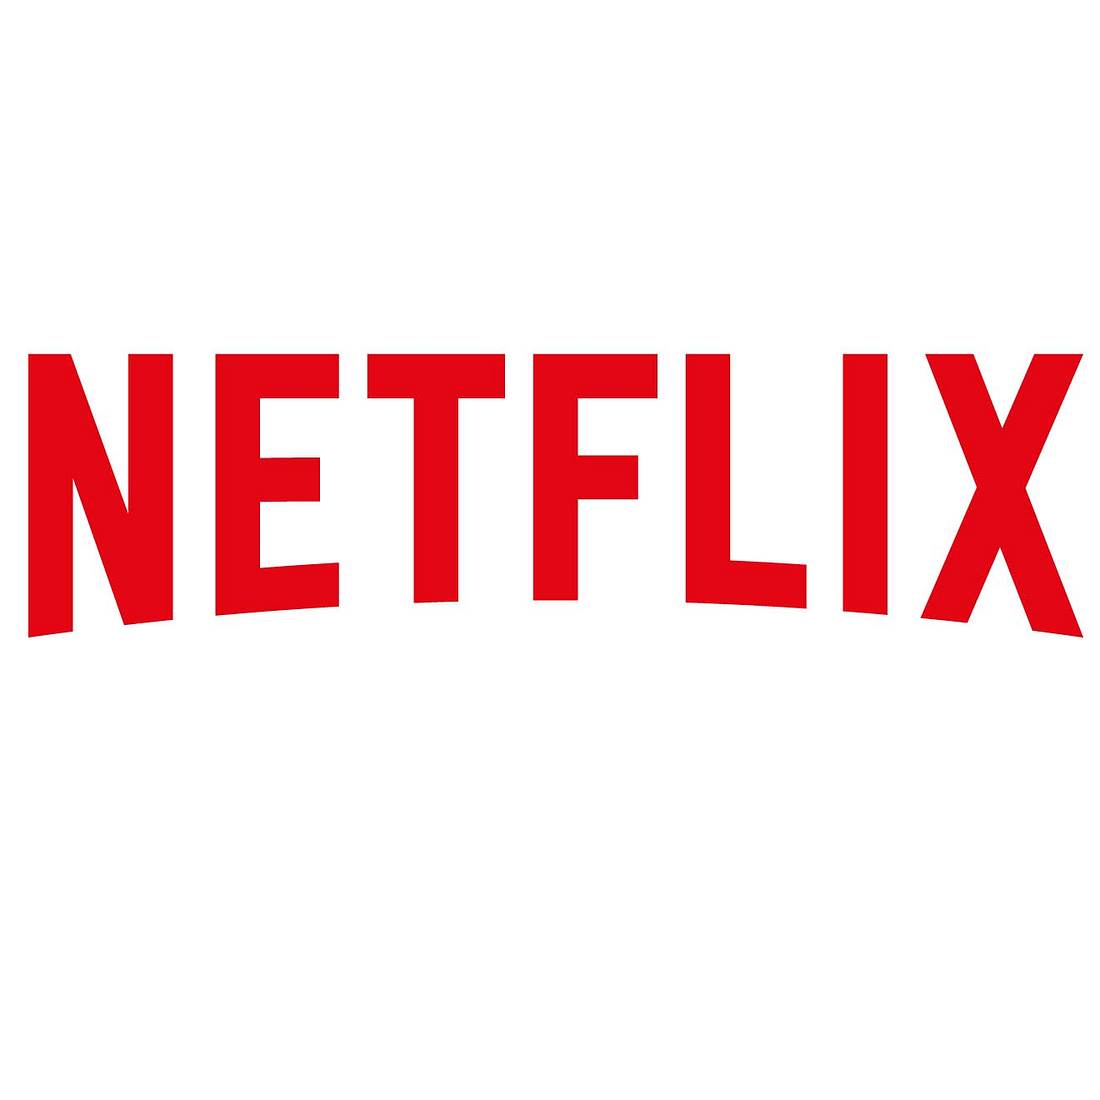 Beliebte Netflix-Serie überraschend abgesetzt